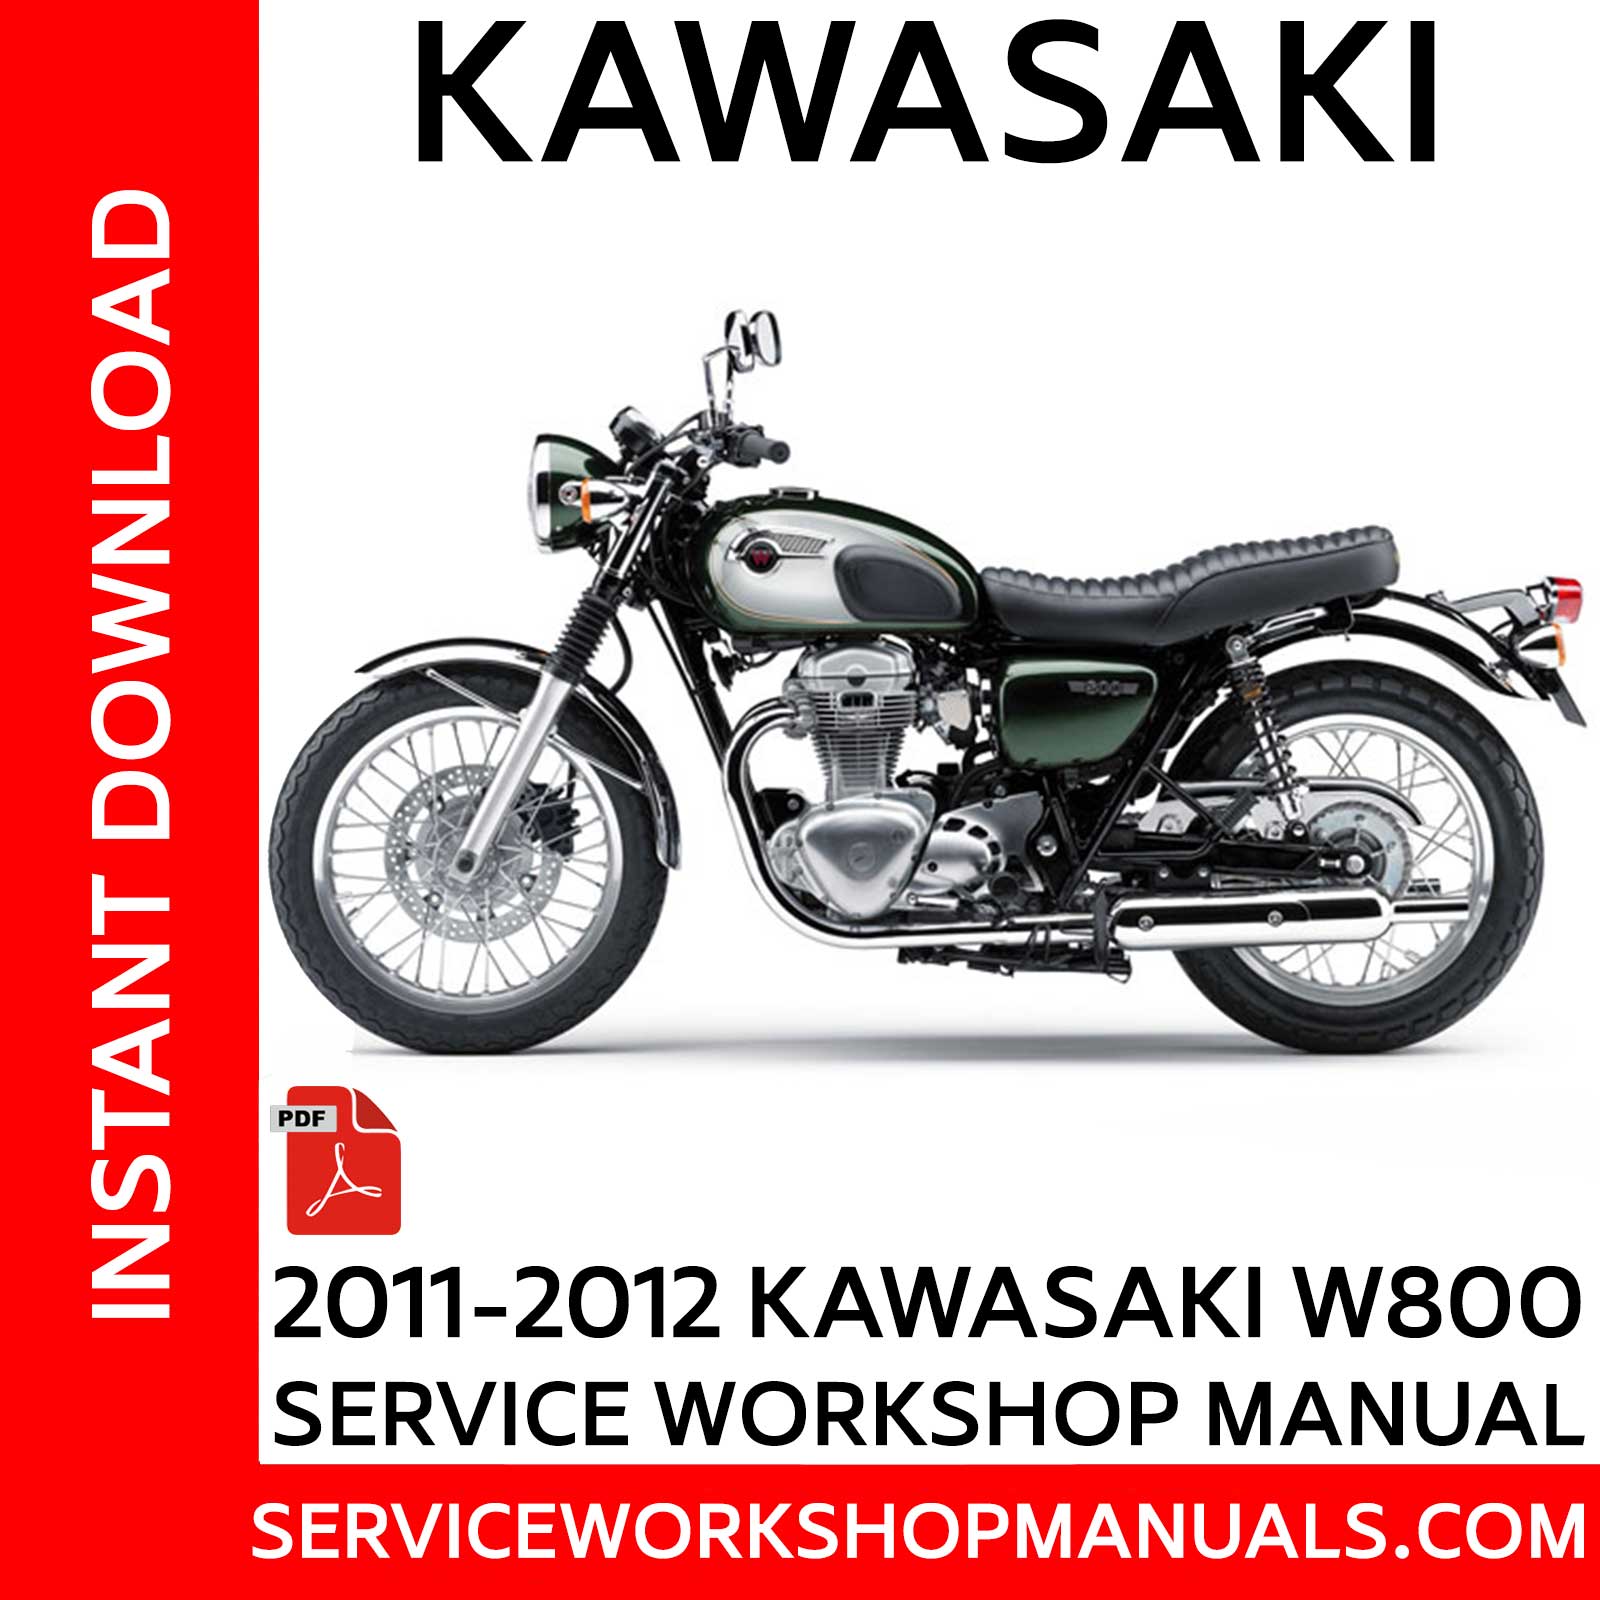 Kawasaki W800 Cafe Service Manual Inspiration | Jawa Farma Auto